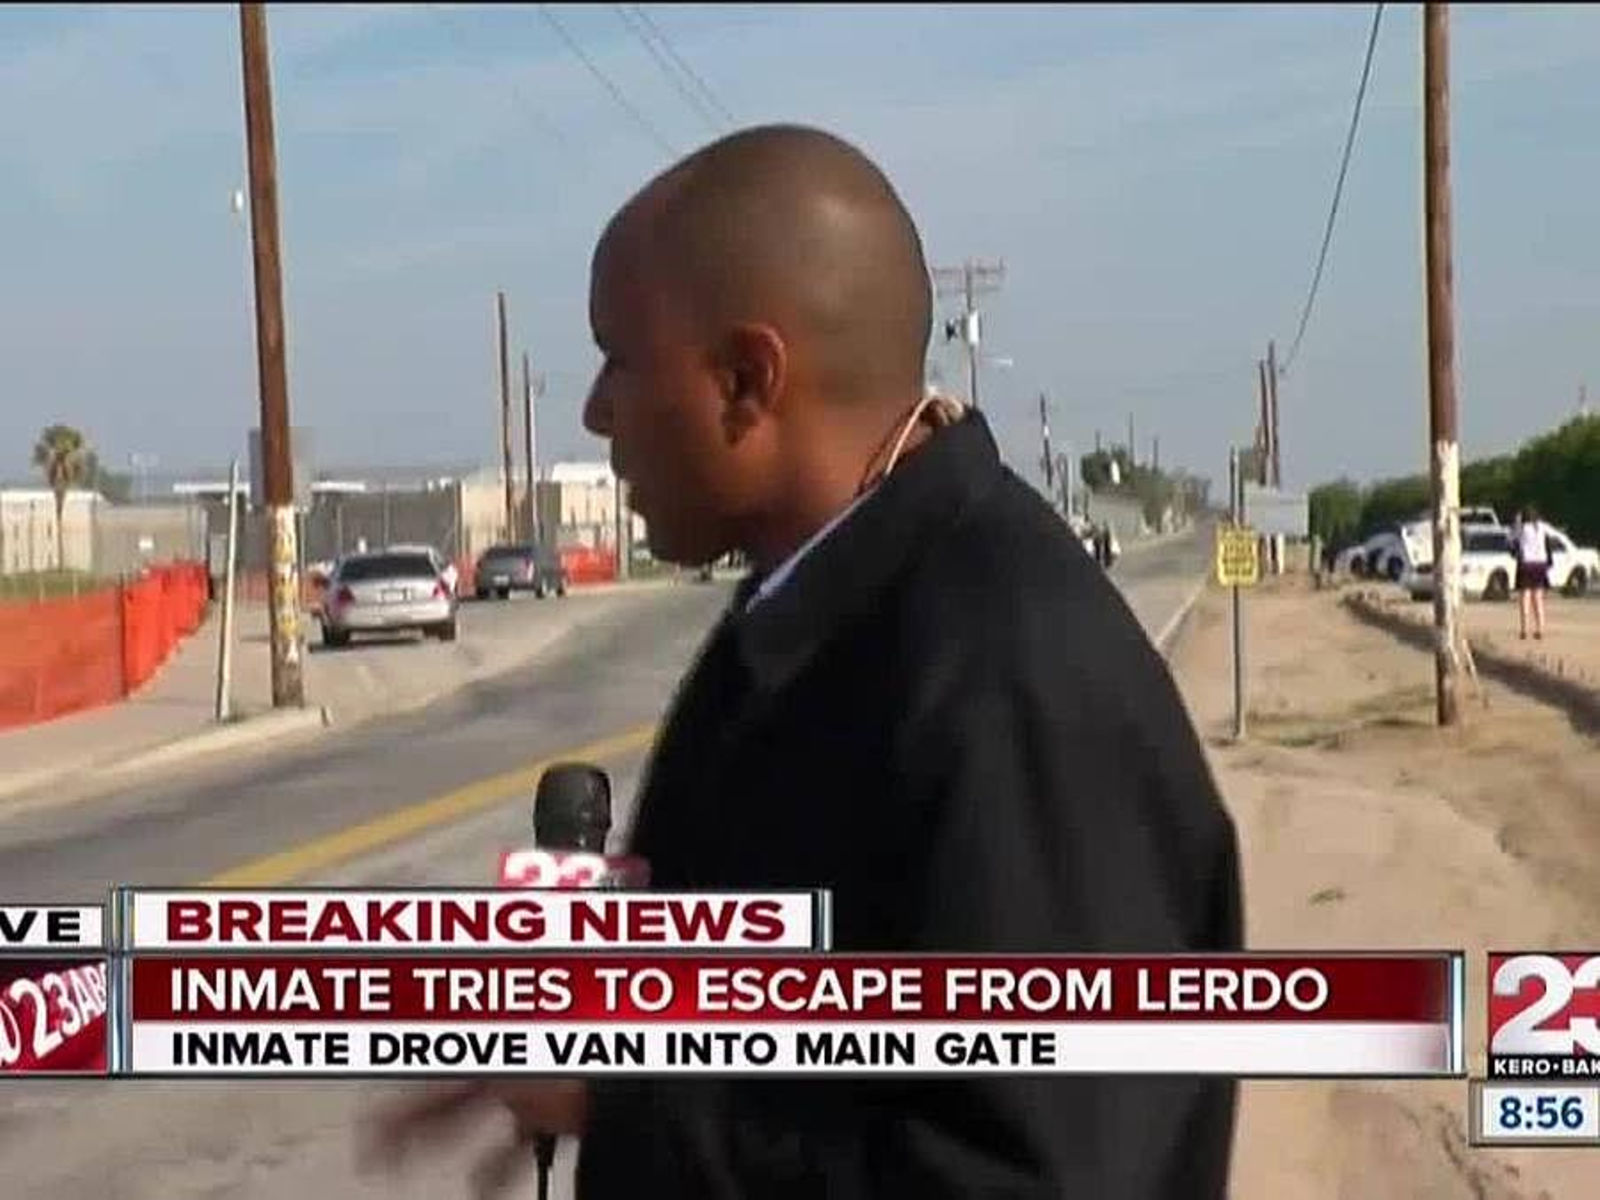 CHP Escaped inmate involved in traffic collision near Lerdo Jail LA